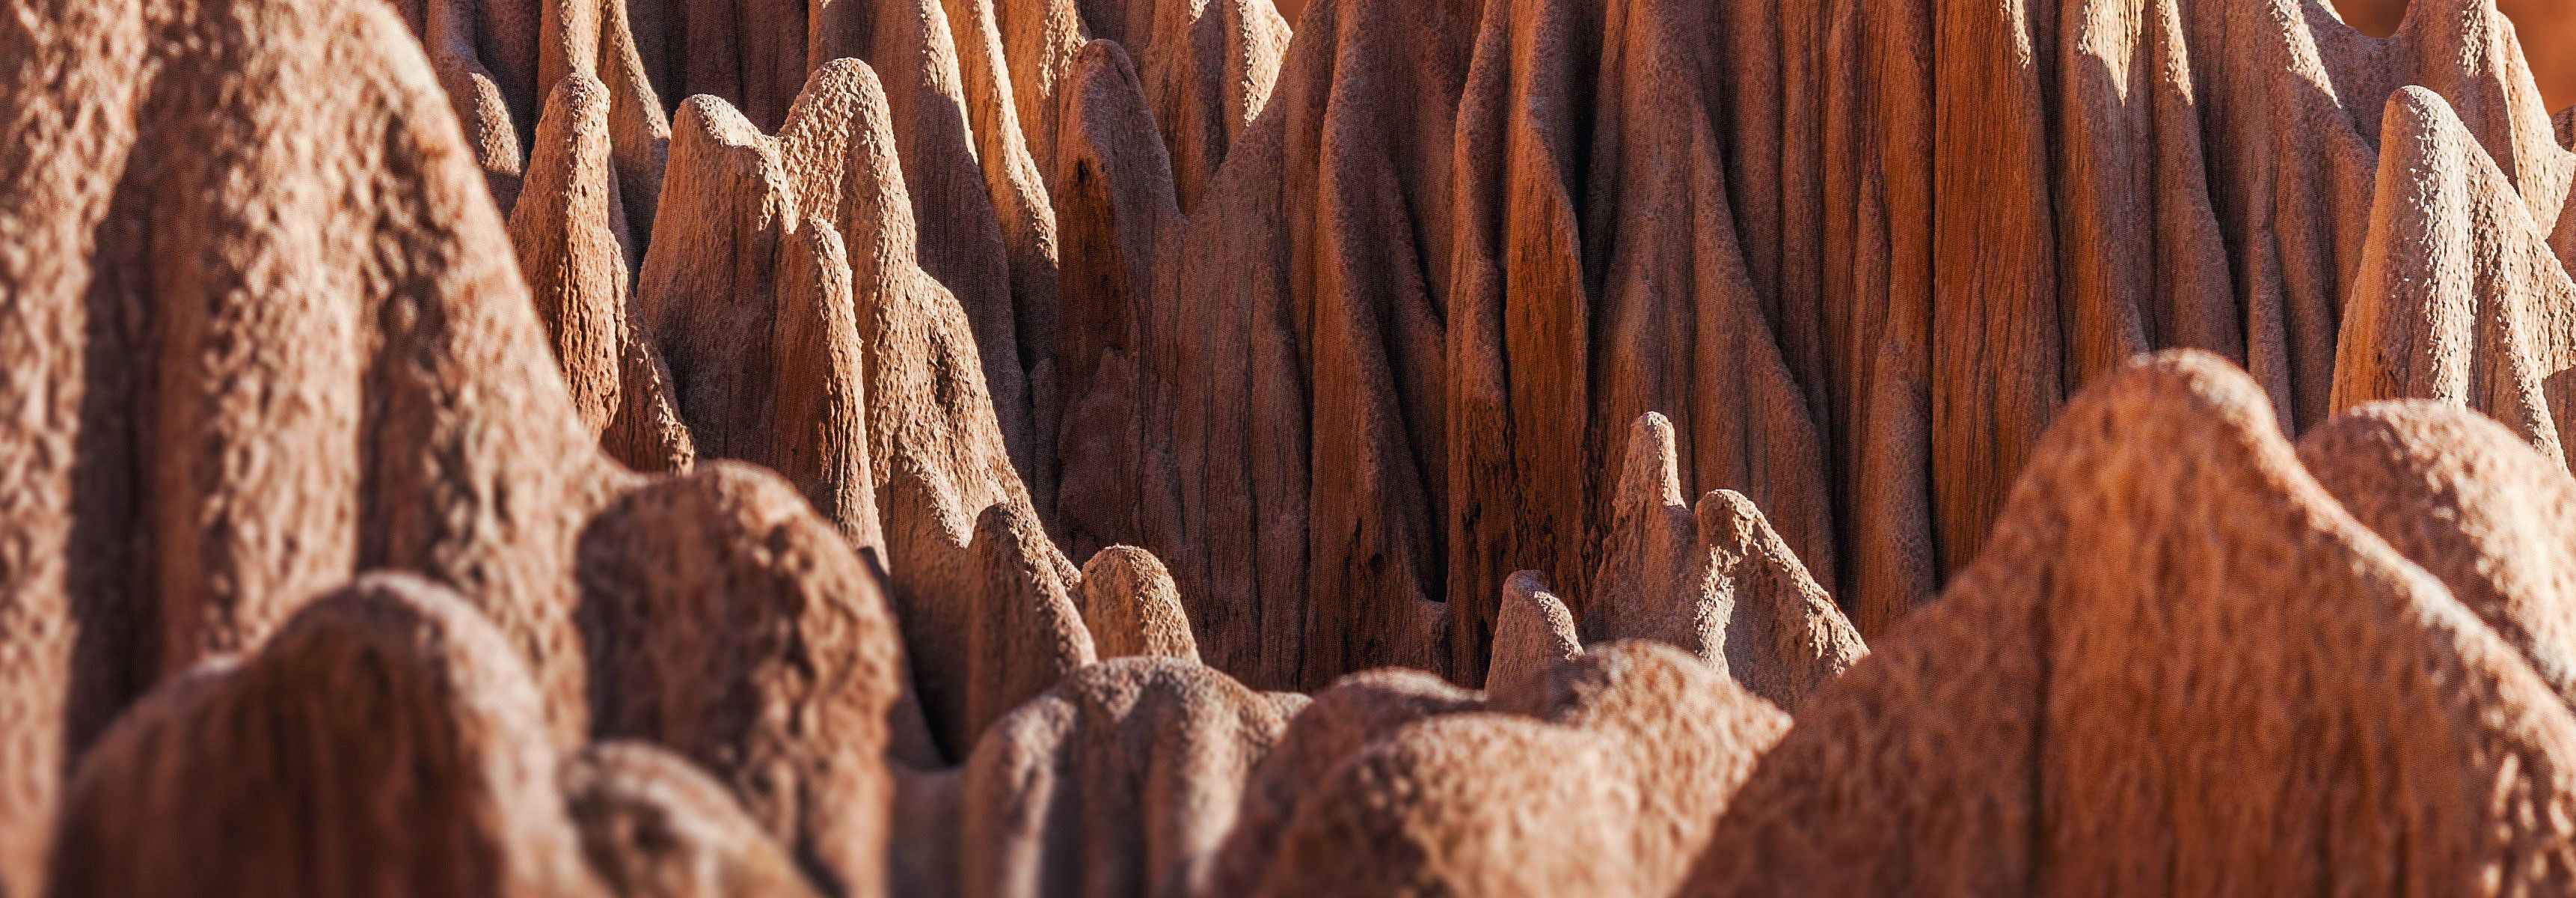 The Red tsingy of Antsiranana, Madagascar. Karsts naturale ma